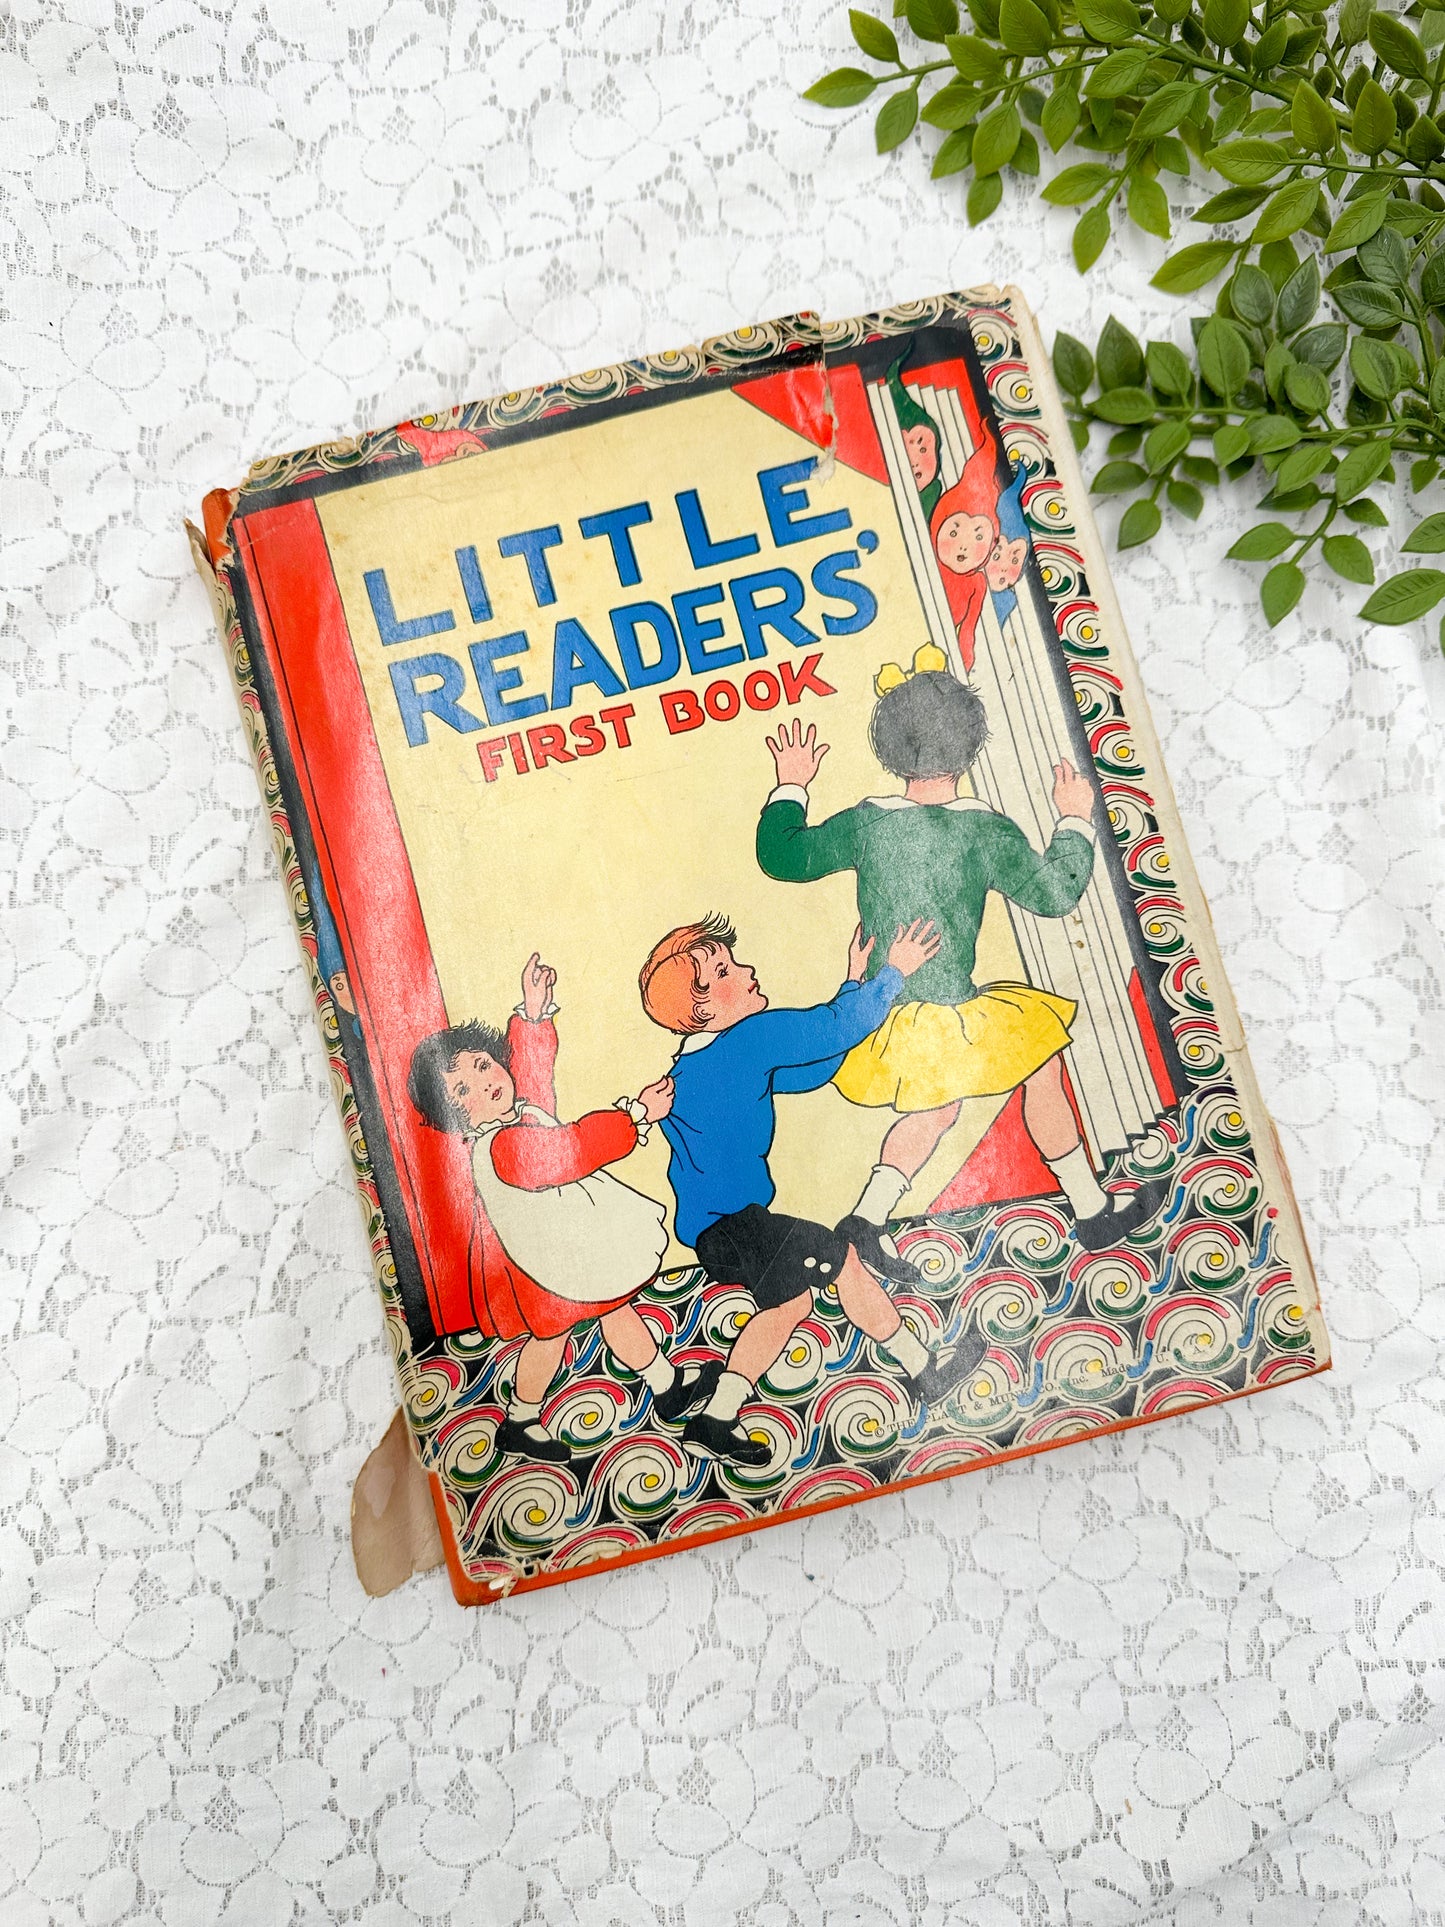 Little Readers First Book- 1934